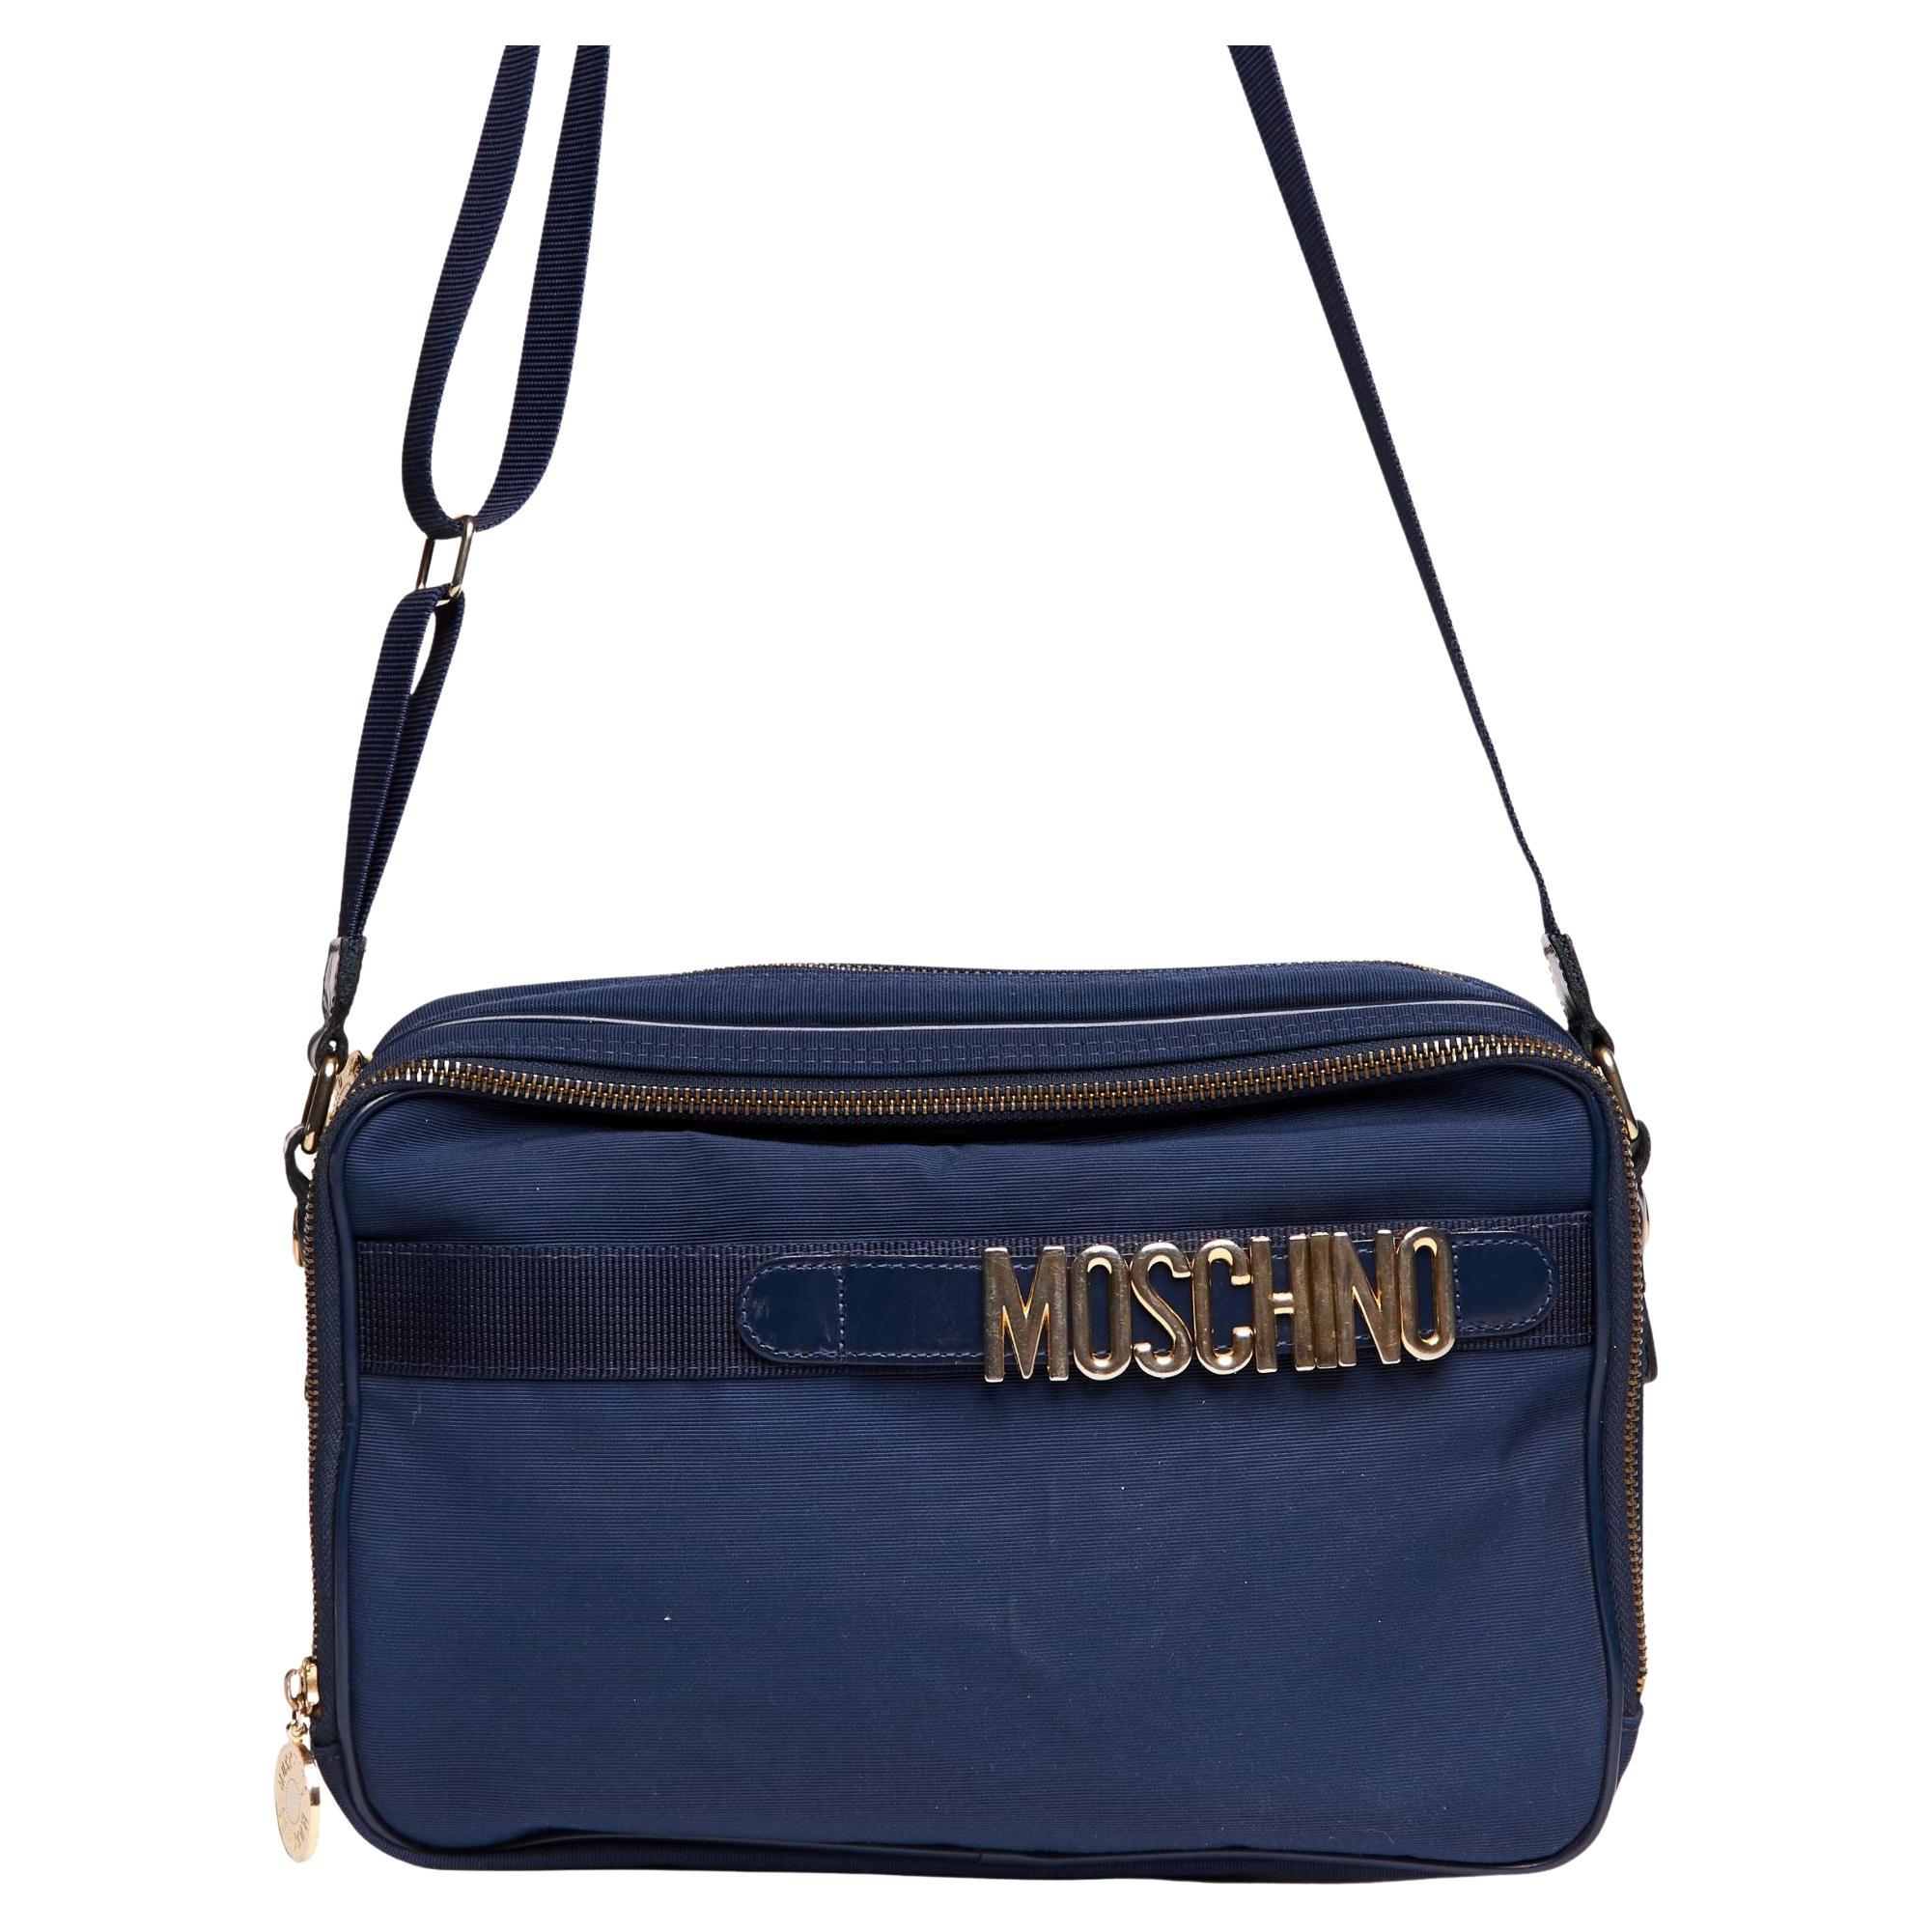 Moschino Monogram Navy Blue Camera Bag